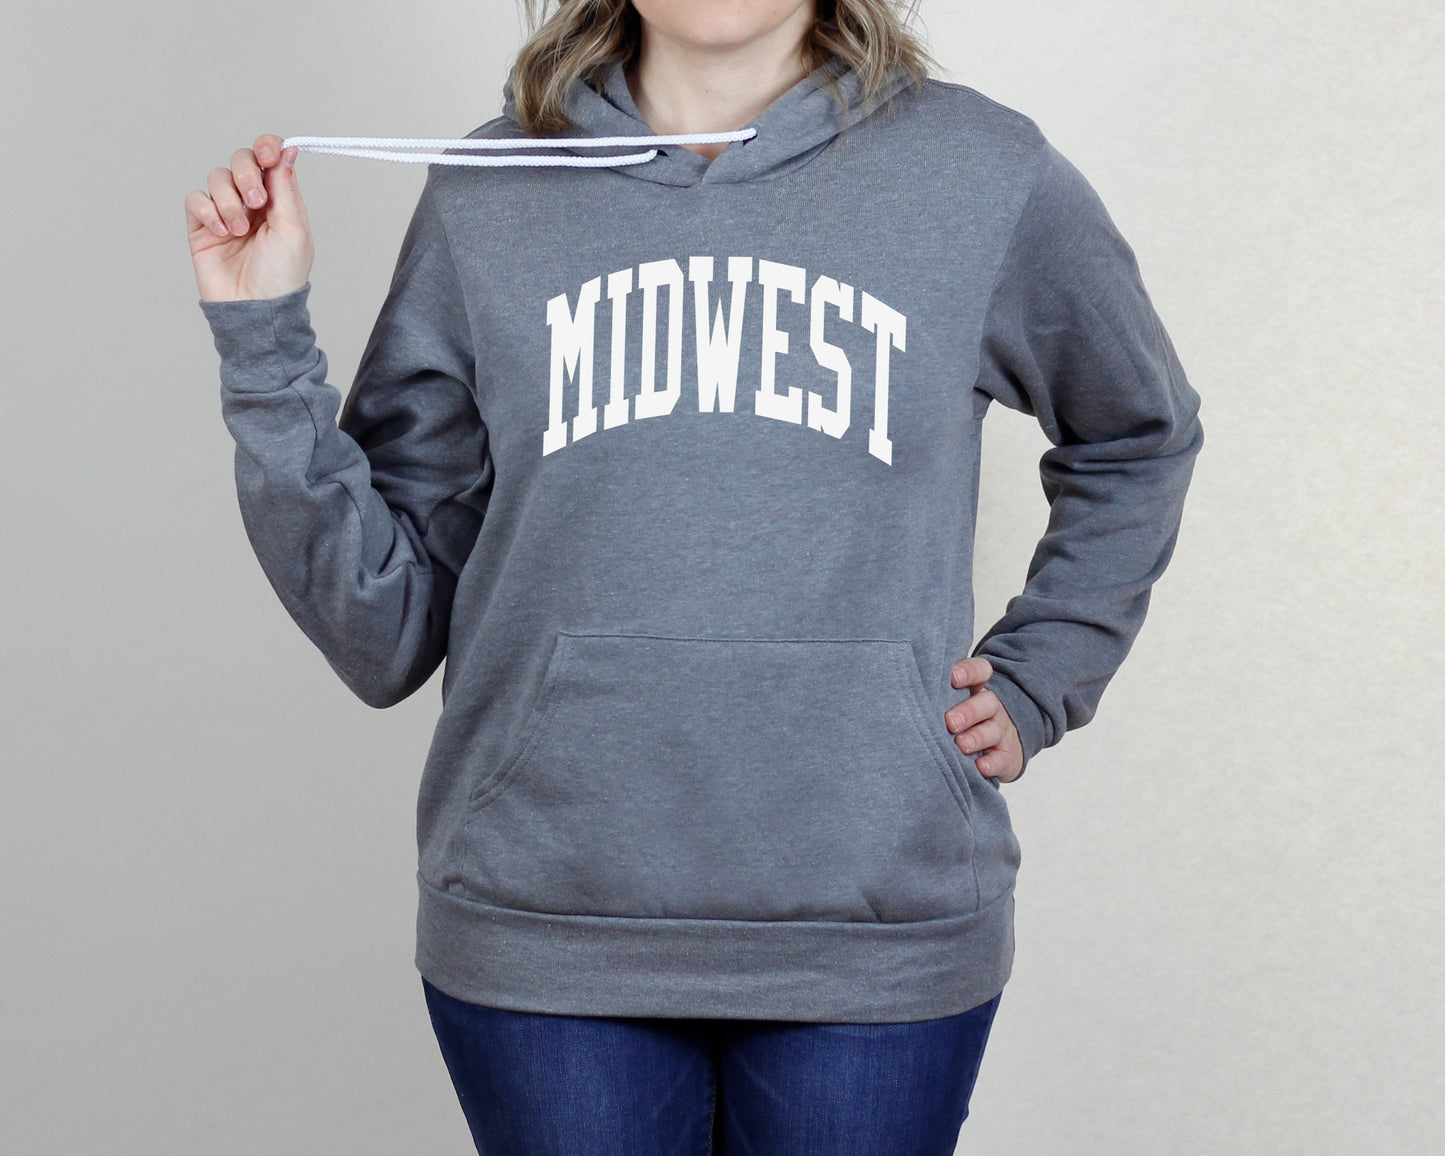 Midwest Hooded Sweatshirt